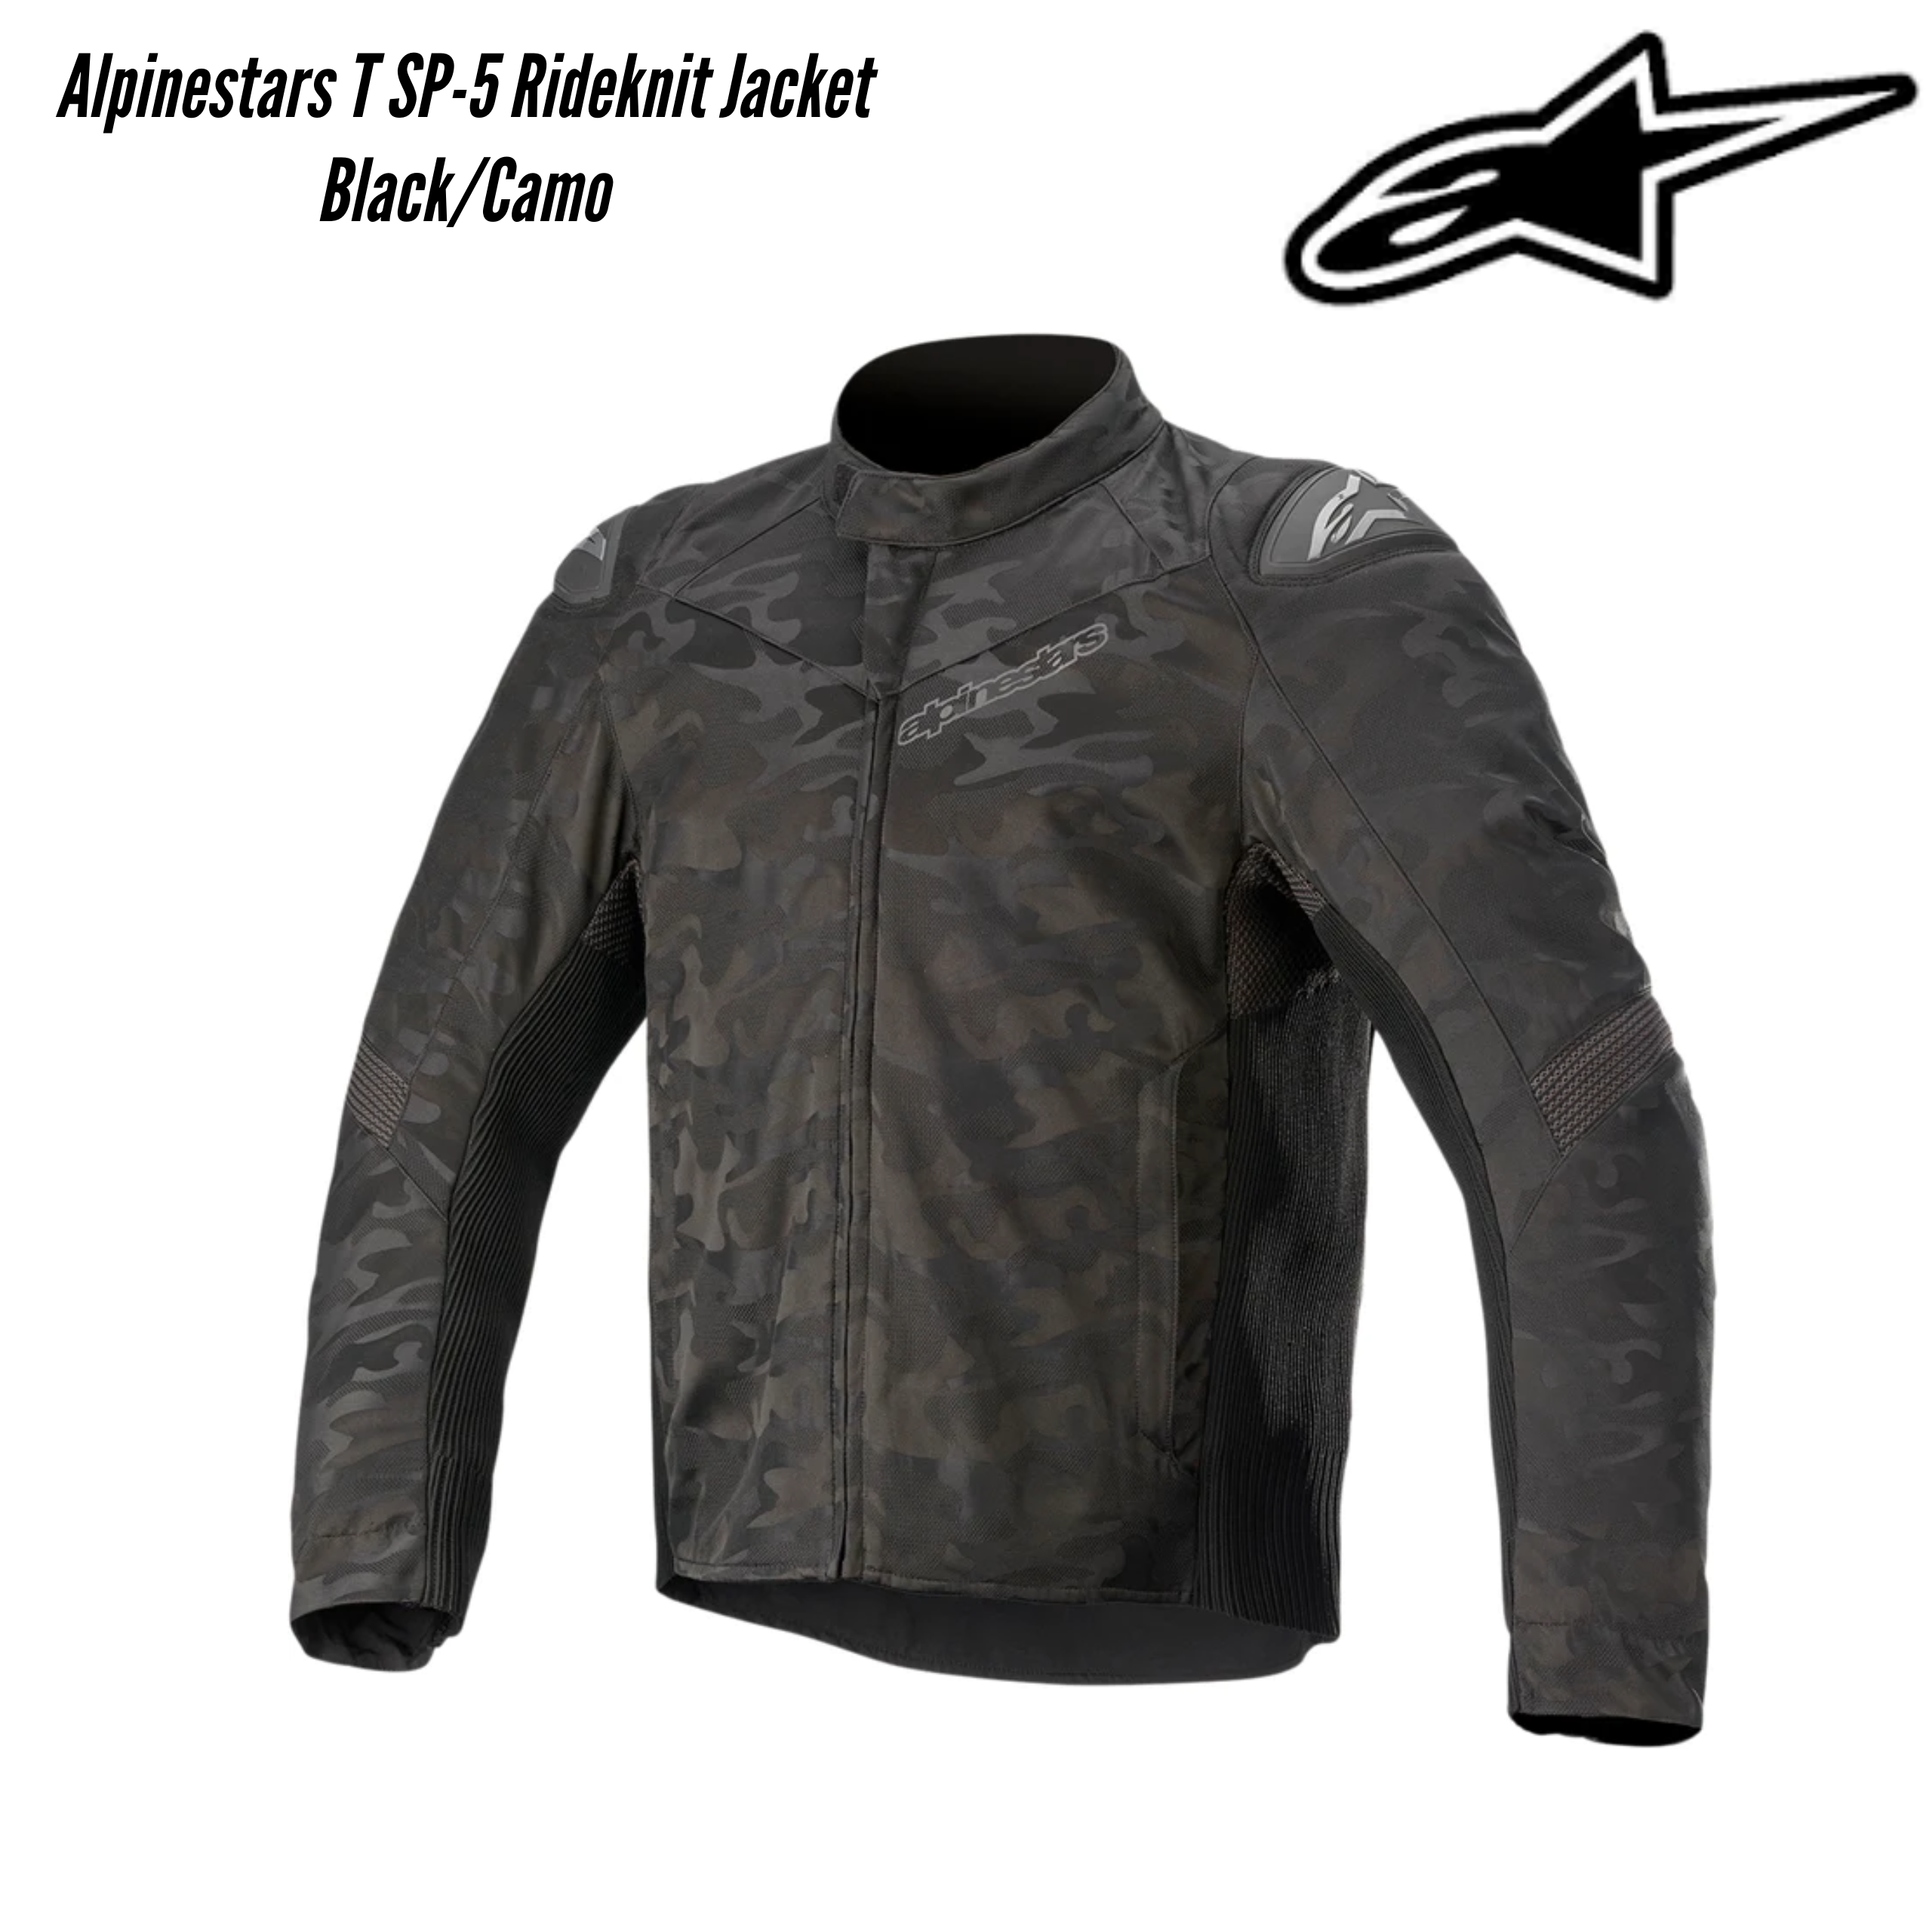 Alpinestars T SP-5 Rideknit Jacket Black/Camo